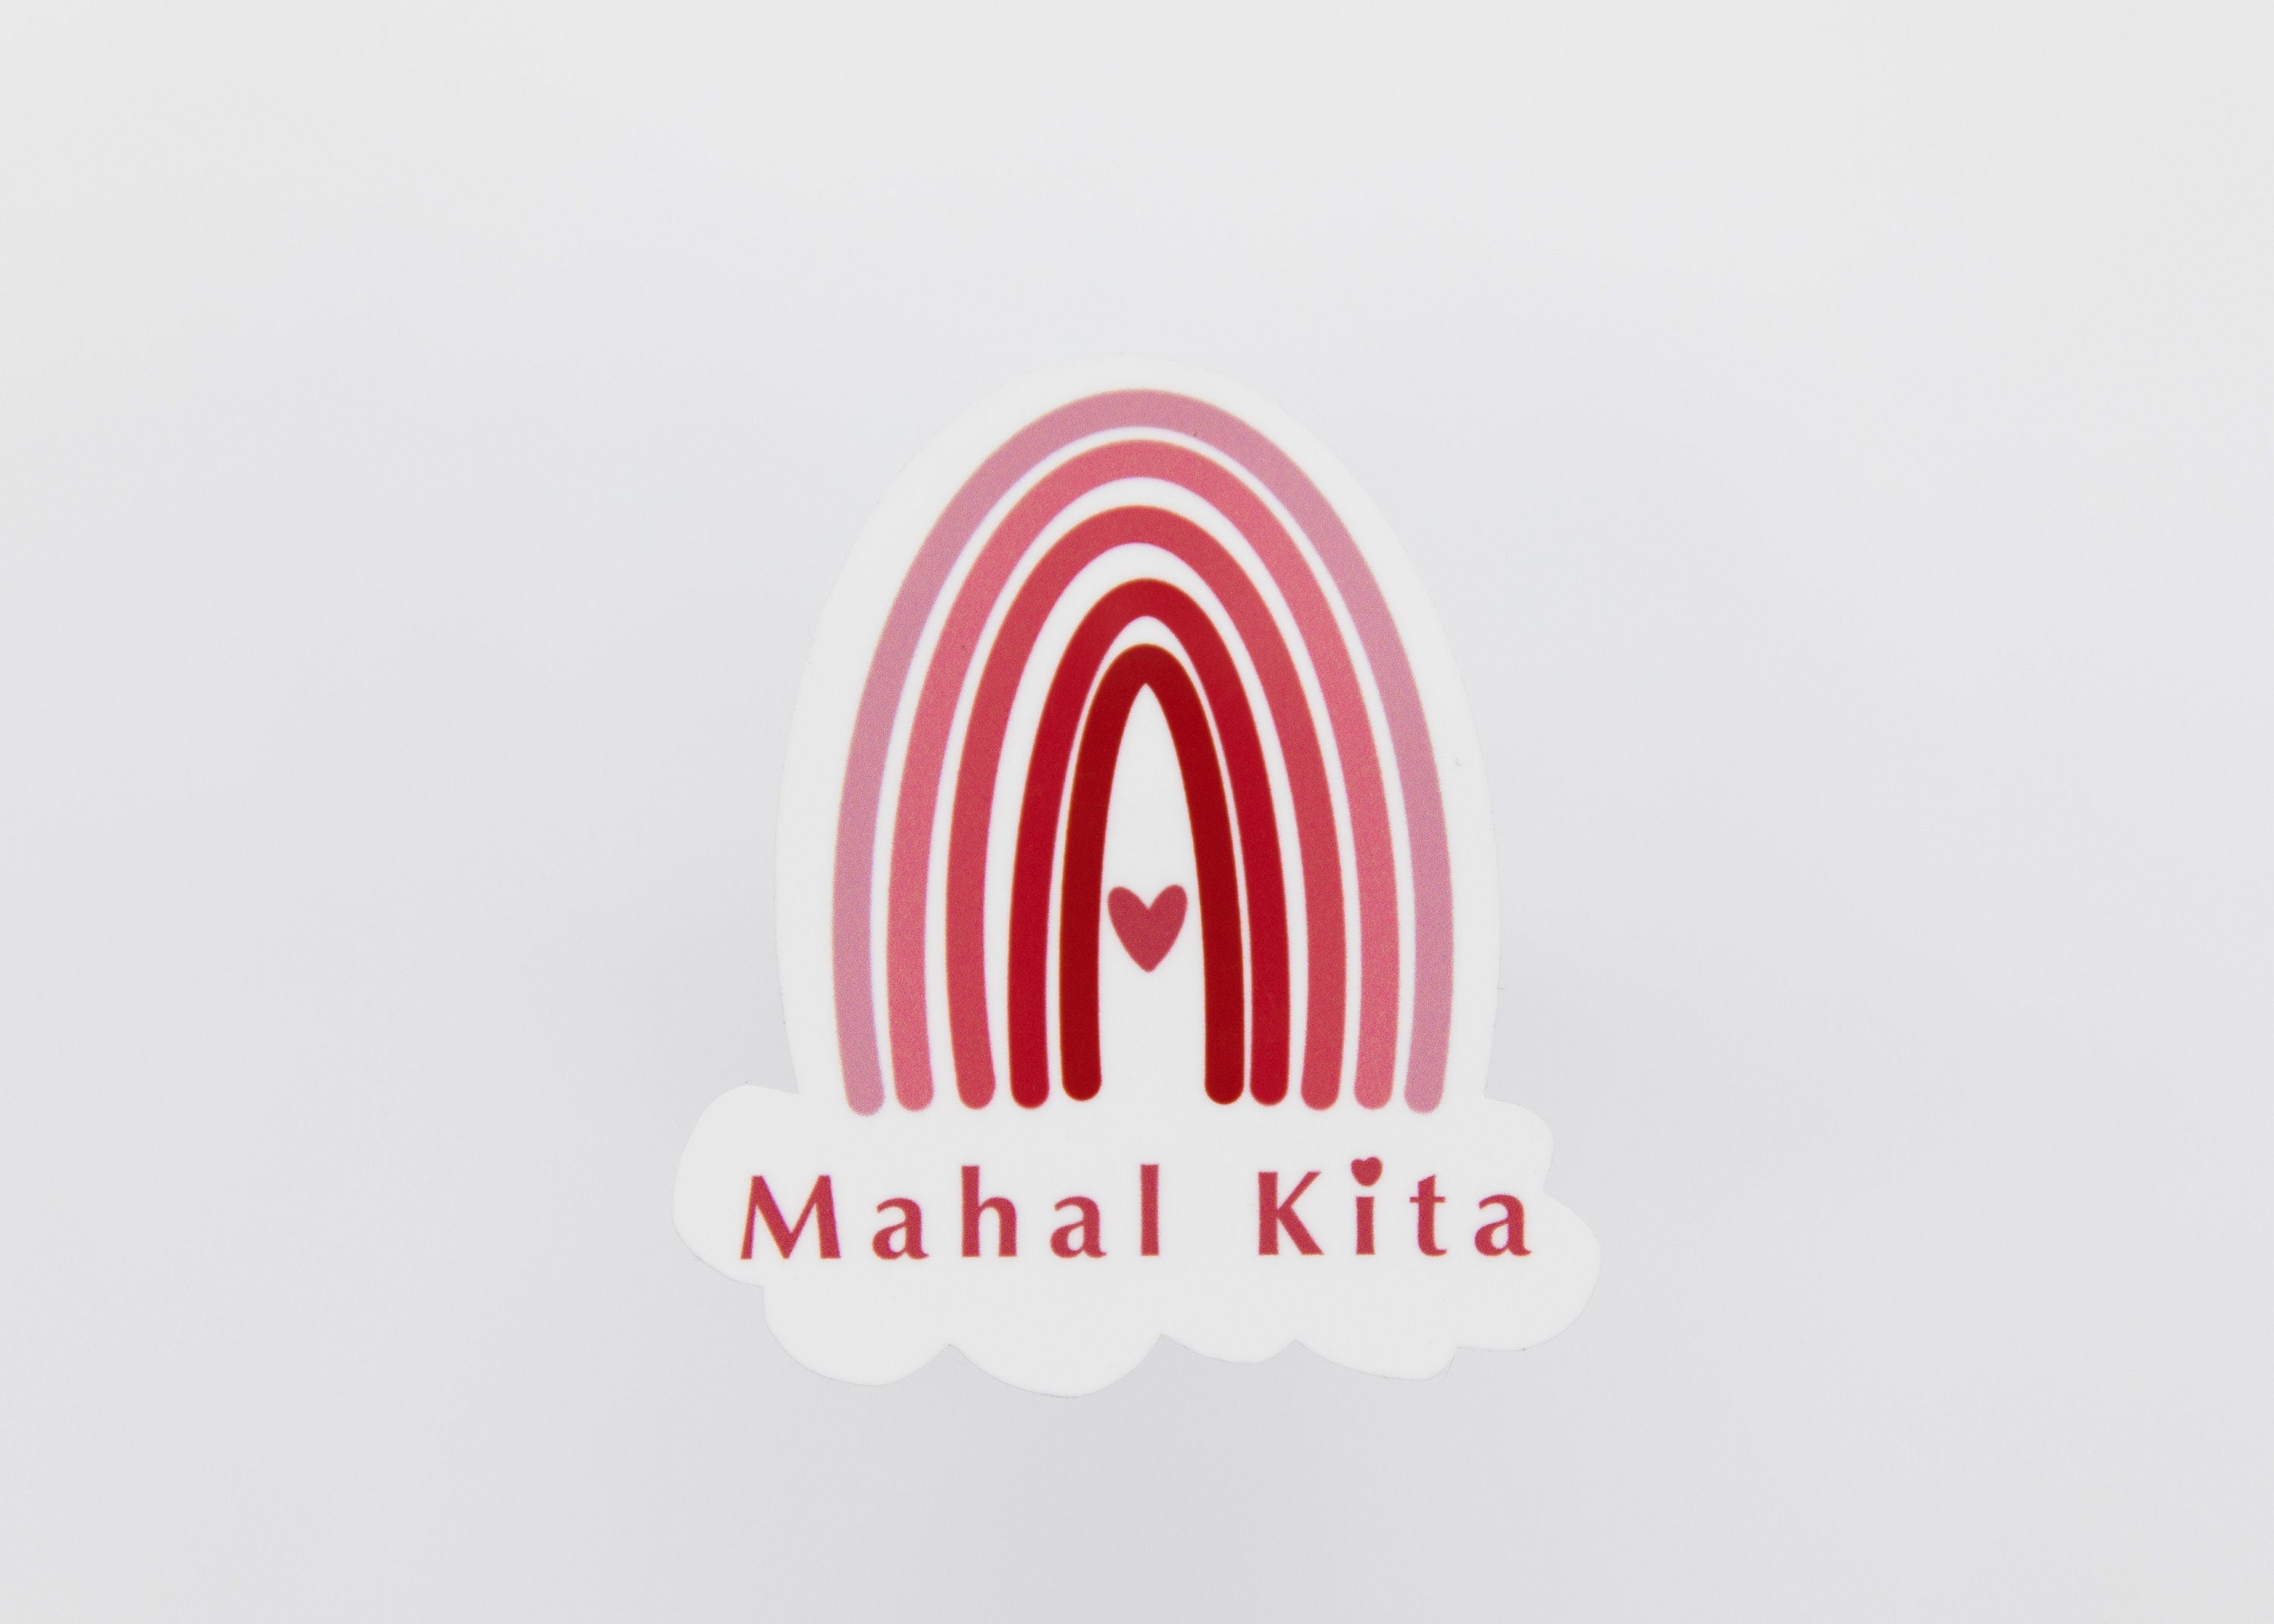 Mie Makes Mahal Kita Sticker, Rainbow Sticker, Filipino Sticker, Valentine's Day Sticker, Sticker for Her, Heart Sticker, Filipina, Red Rainbow, Pinay